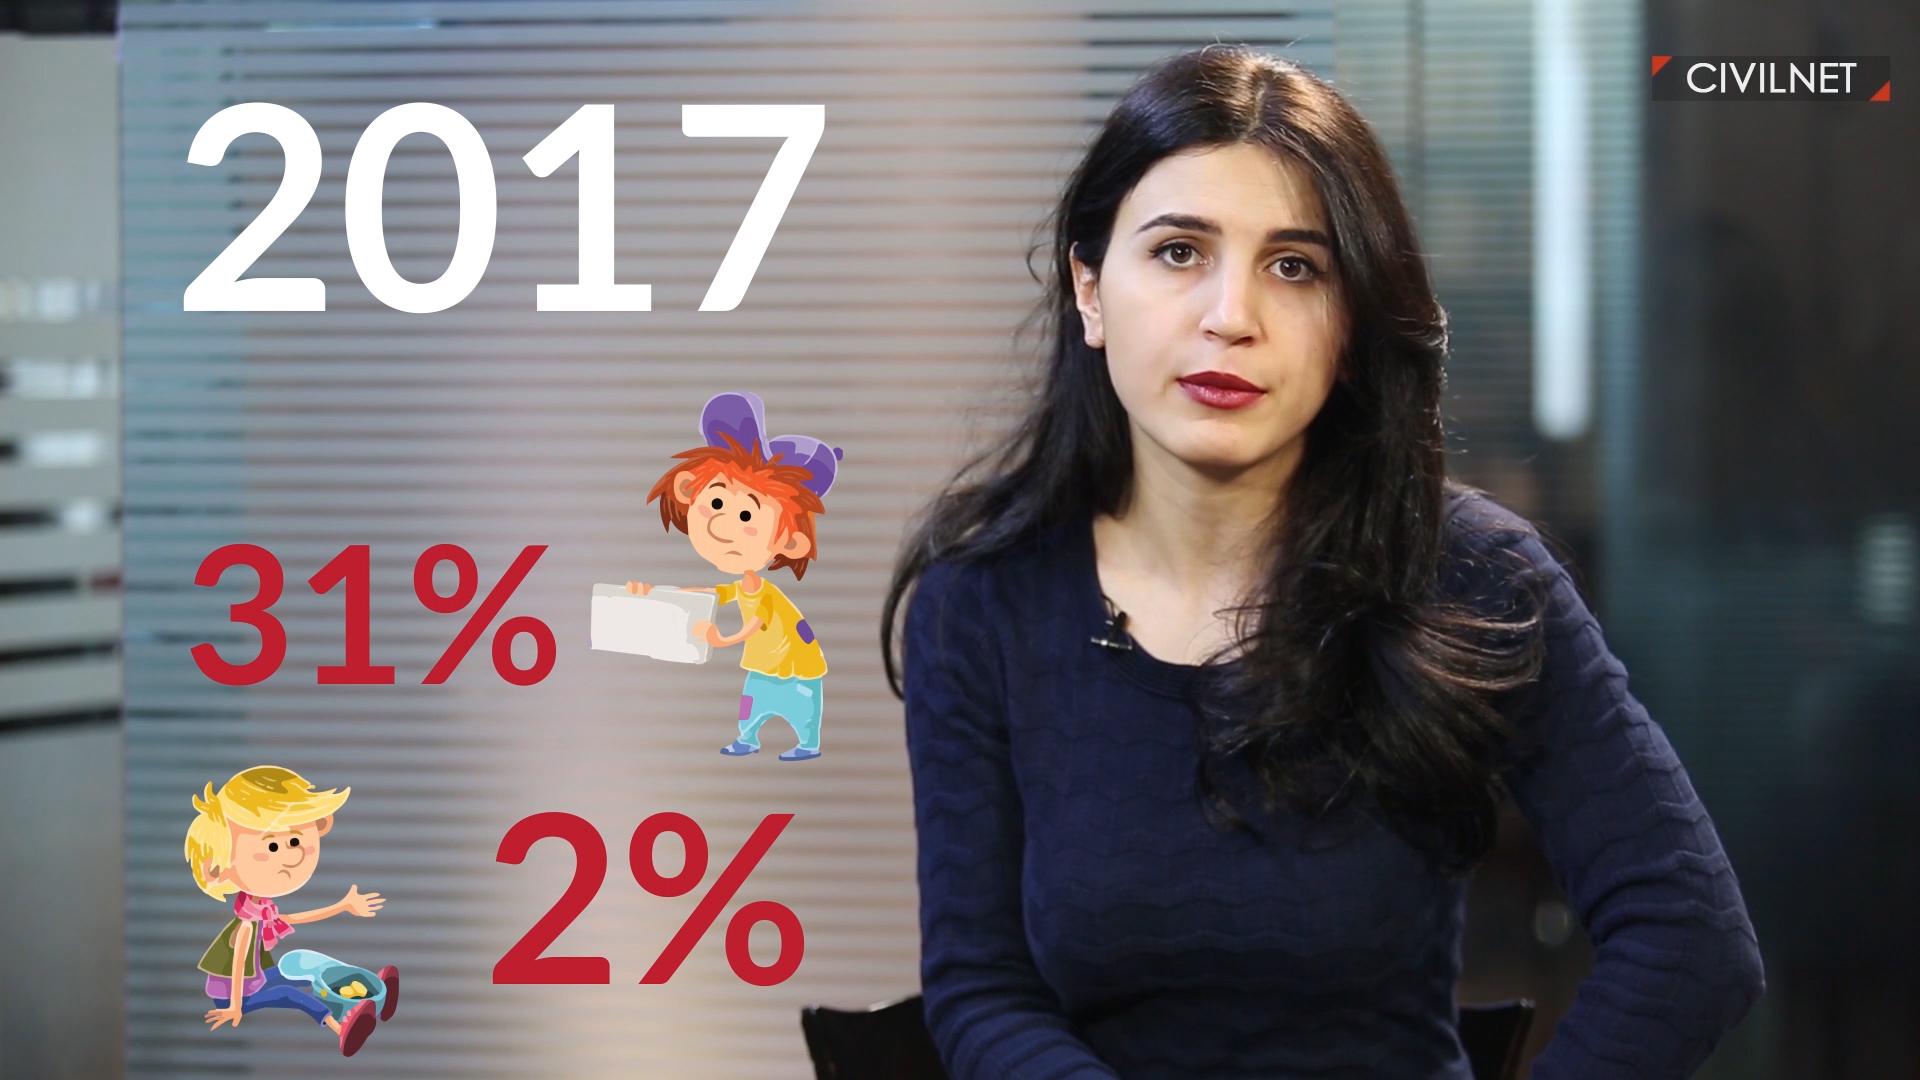 Տասը թիվ Հայաստանում մանկական աղքատության վերաբերյալ